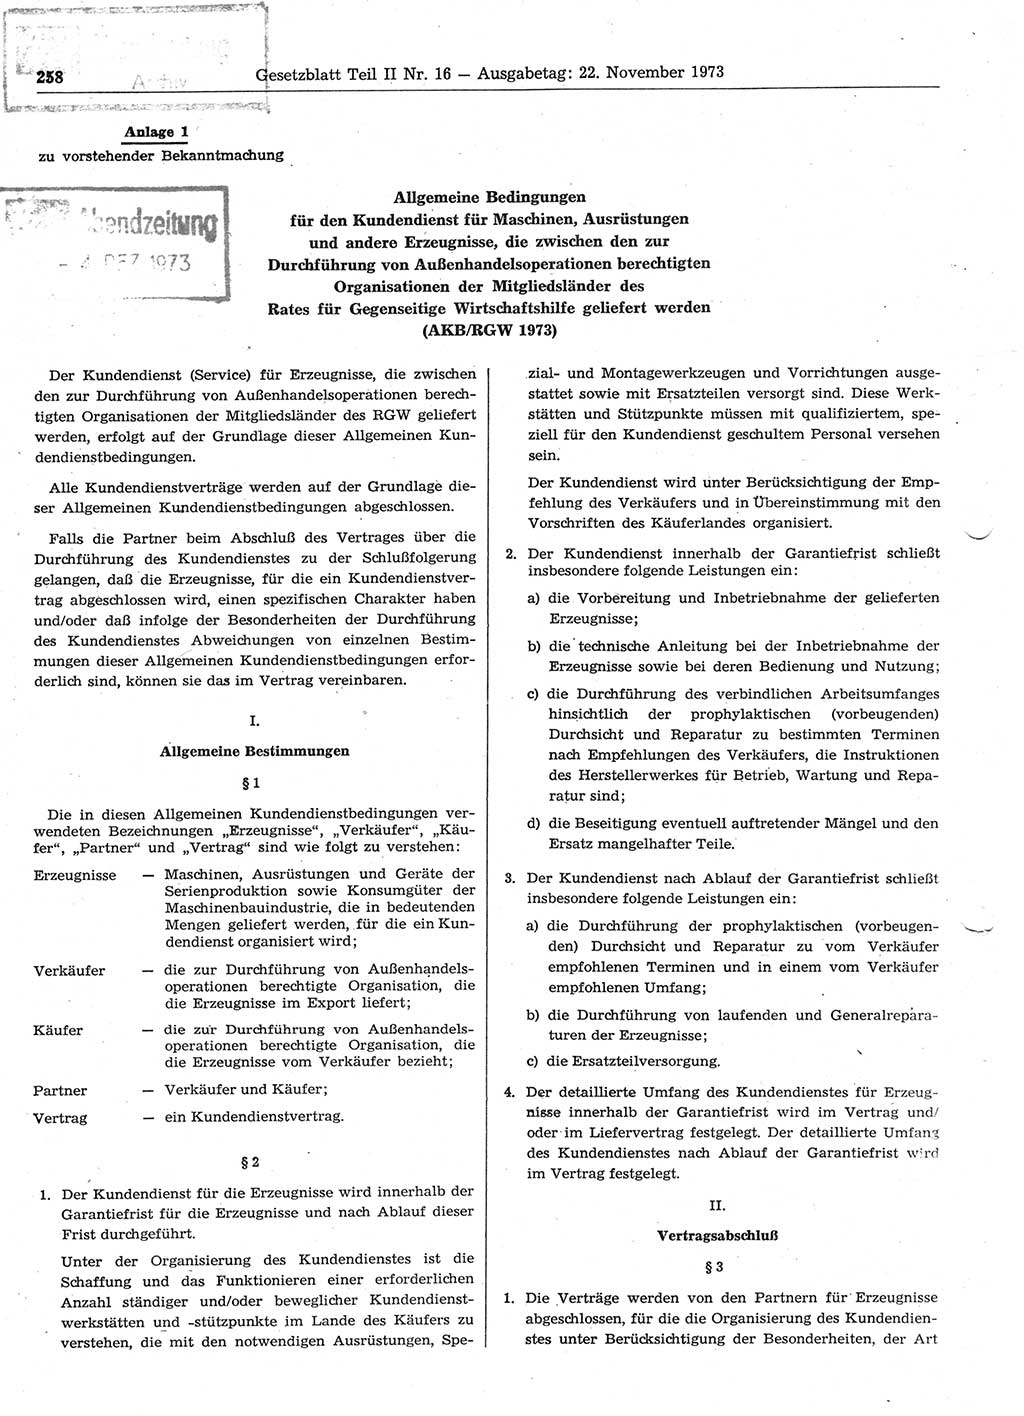 Gesetzblatt (GBl.) der Deutschen Demokratischen Republik (DDR) Teil ⅠⅠ 1973, Seite 258 (GBl. DDR ⅠⅠ 1973, S. 258)